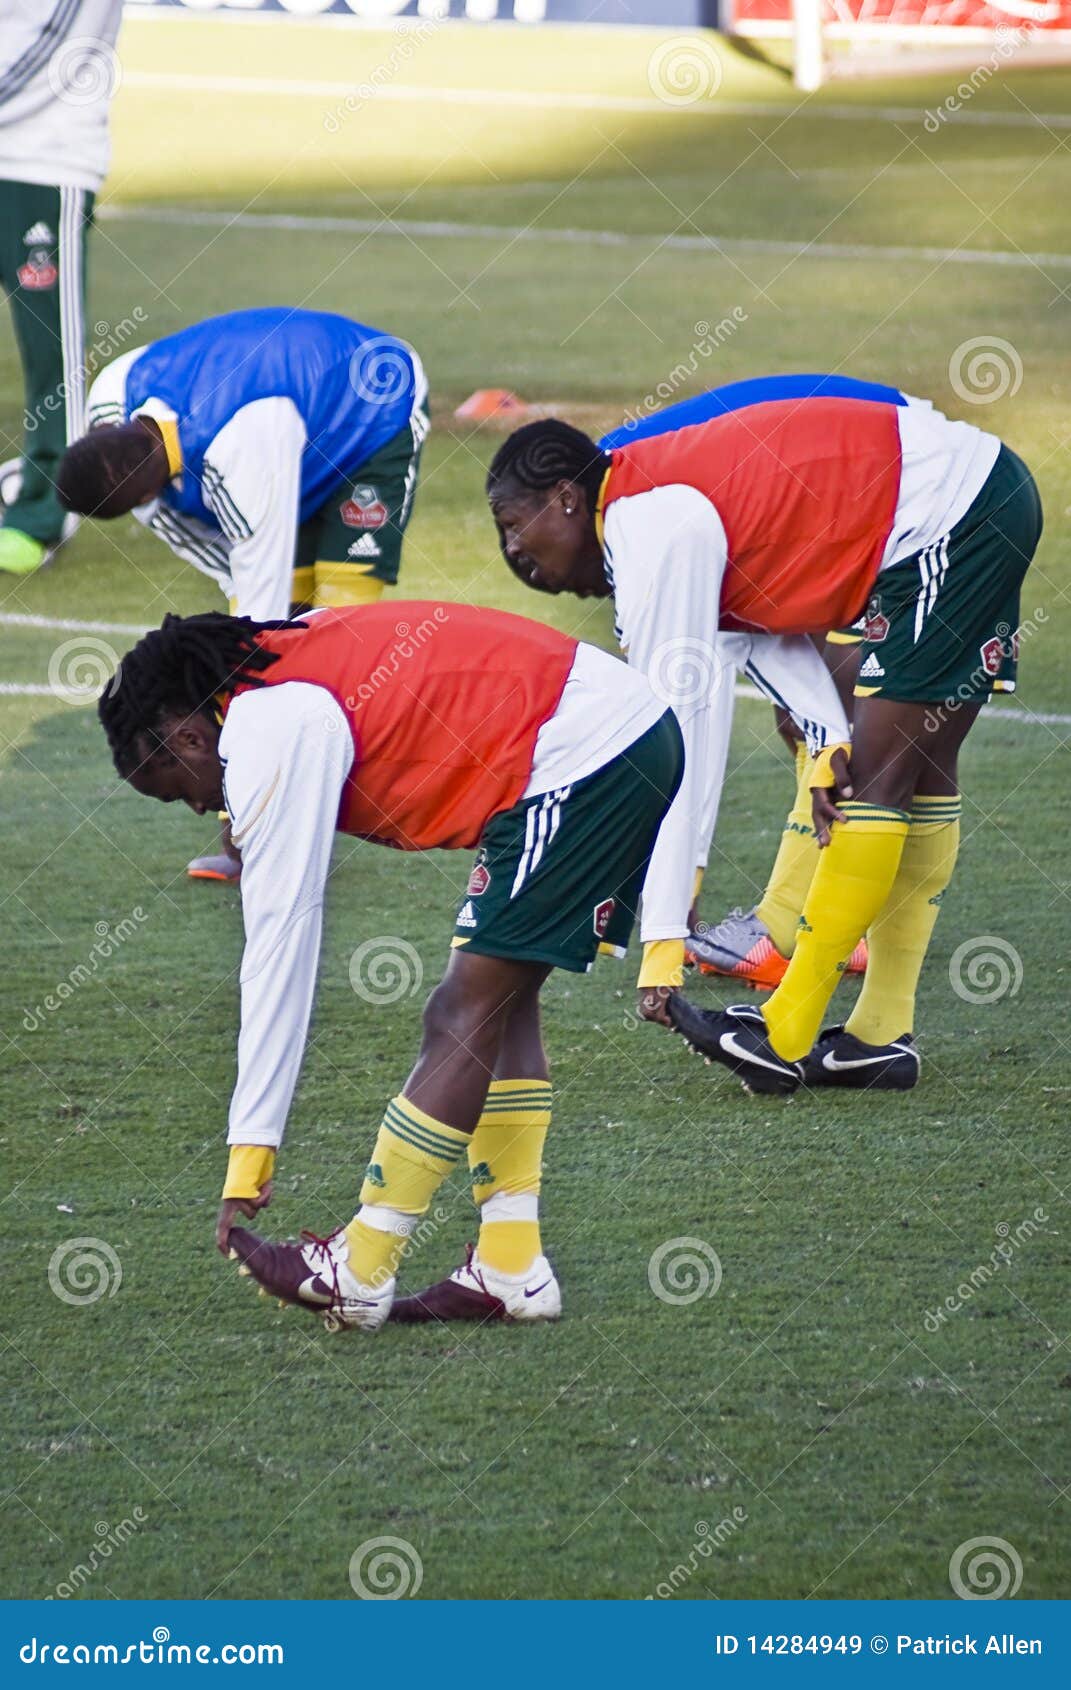 κατάρτιση bafana. το αφρικανικό bafana της Αφρικής 05 12 το 2010 όντας ημέρες ημέρας φλυτζανιών η λίγη FIFA gauteng που παίρνει έχει κρατήσει τη στο τέλος εθνική ανοικτή ανοιγμένη πρακτικής ομάδα νότιας έναρξης ποδοσφαίρου περιόδων επικοινωνίας προετοιμασιών δημόσια siphiwe στον πανεπιστημιακό κόσμο πνευμάτων όψης tshabalala κατάρτισης